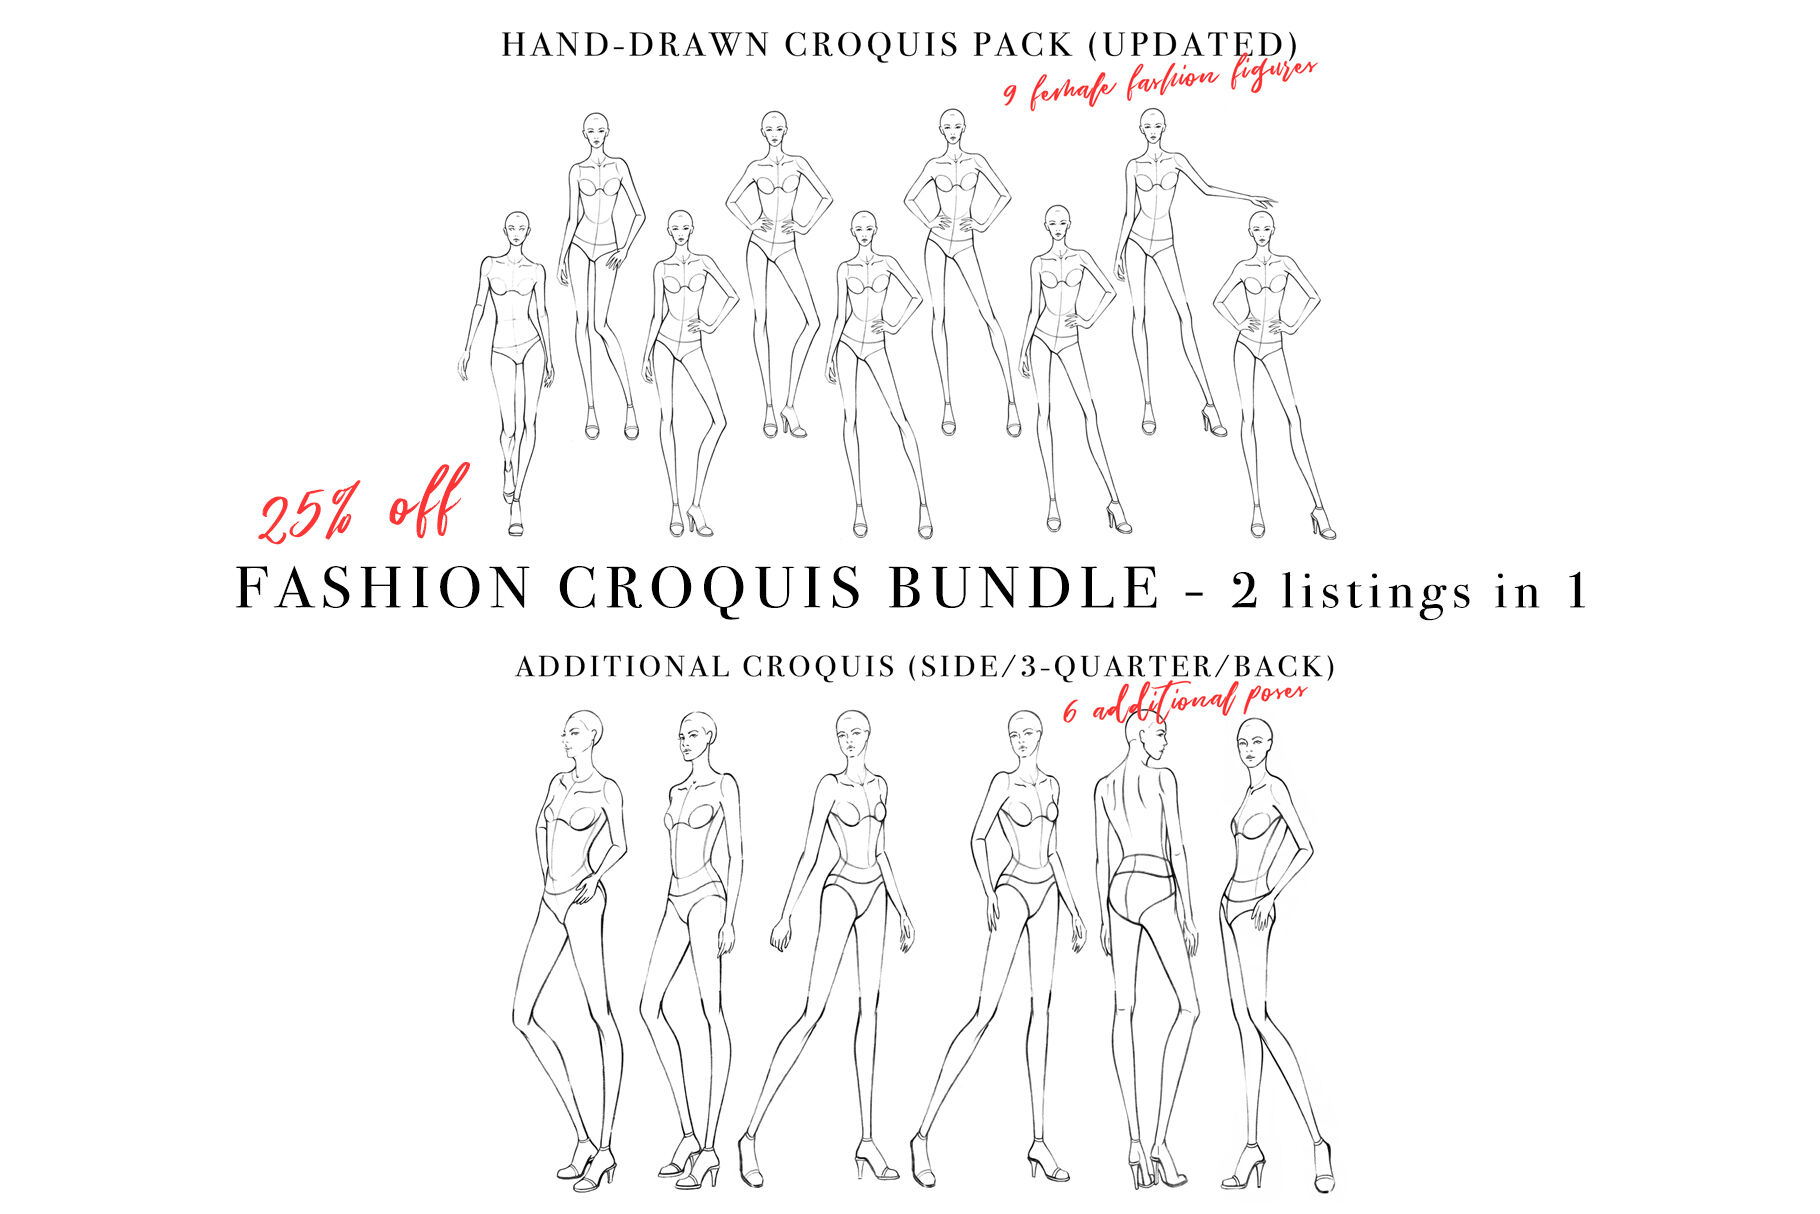 ori 3815144 44fxdhdyh9bg5gi3345kue2029jf16muxdr8omry female figure croquis bundle for fashion illustration